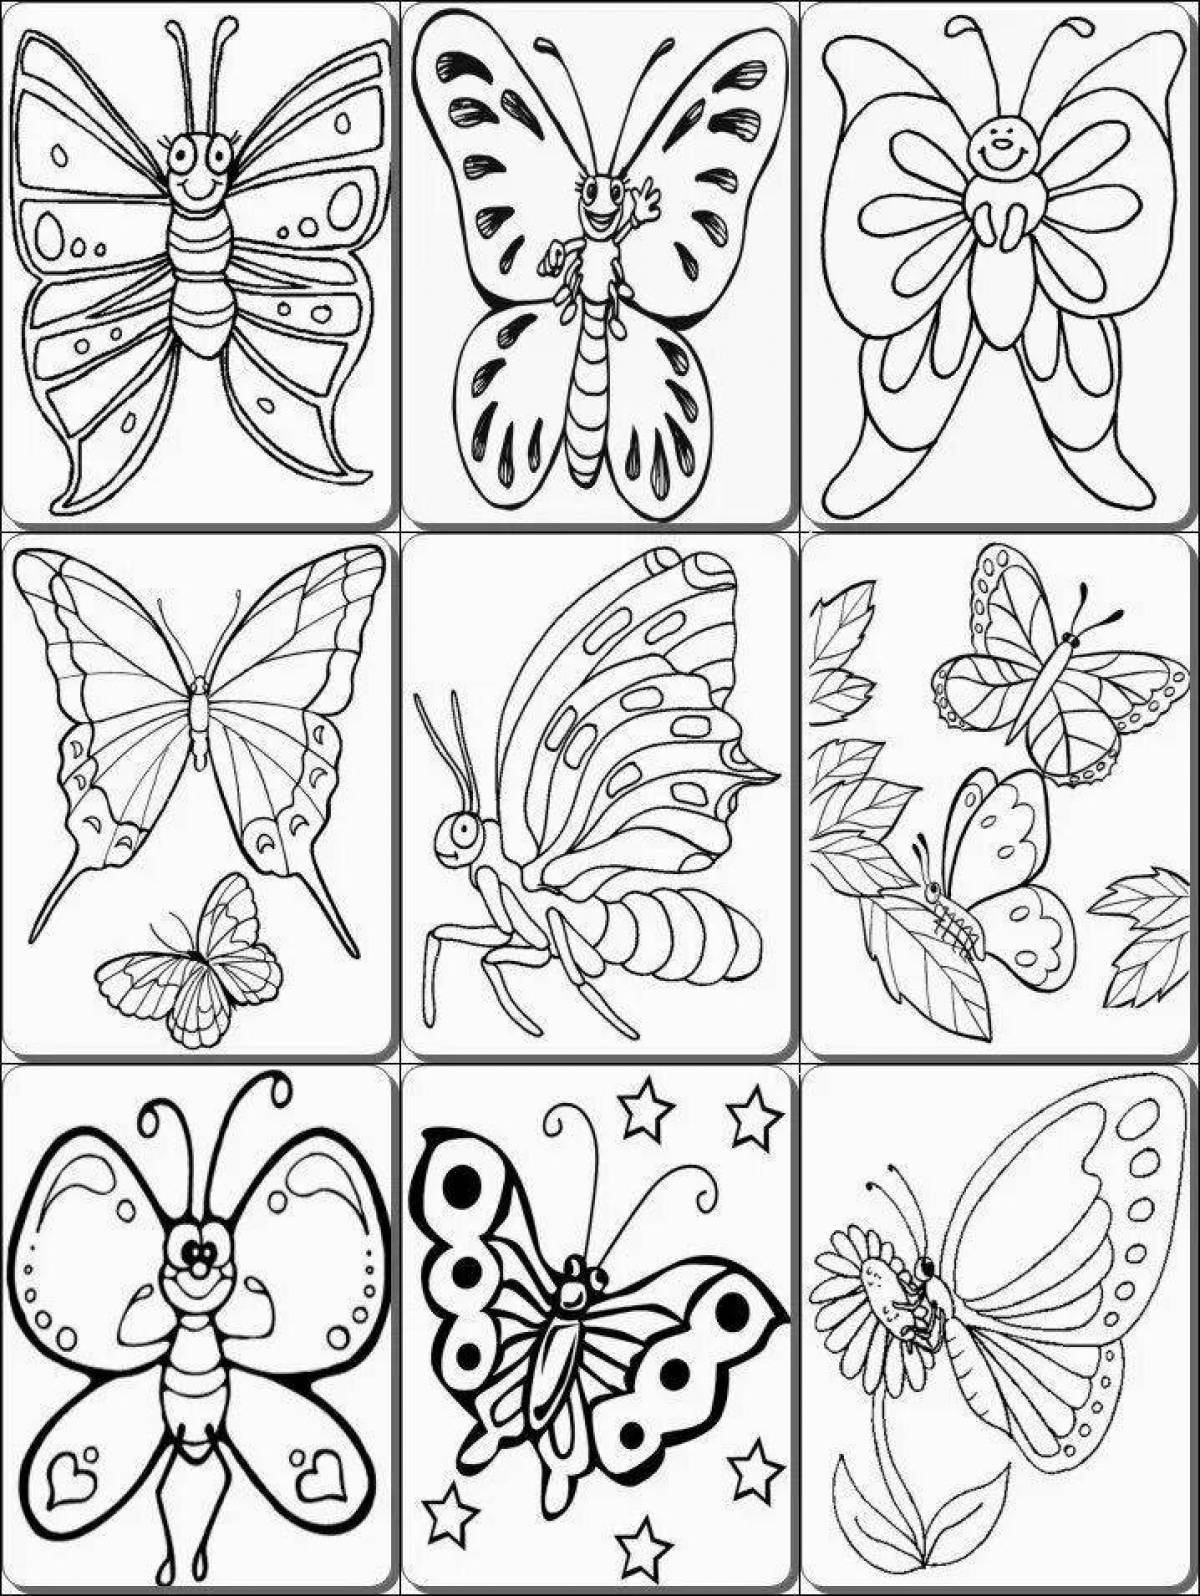 Раскраска на 6 листов. Раскраска "бабочки". Небольшие картинки для раскрашивания. Насекомые. Раскраска. Раскраски бабочки для детей 6-7 лет.